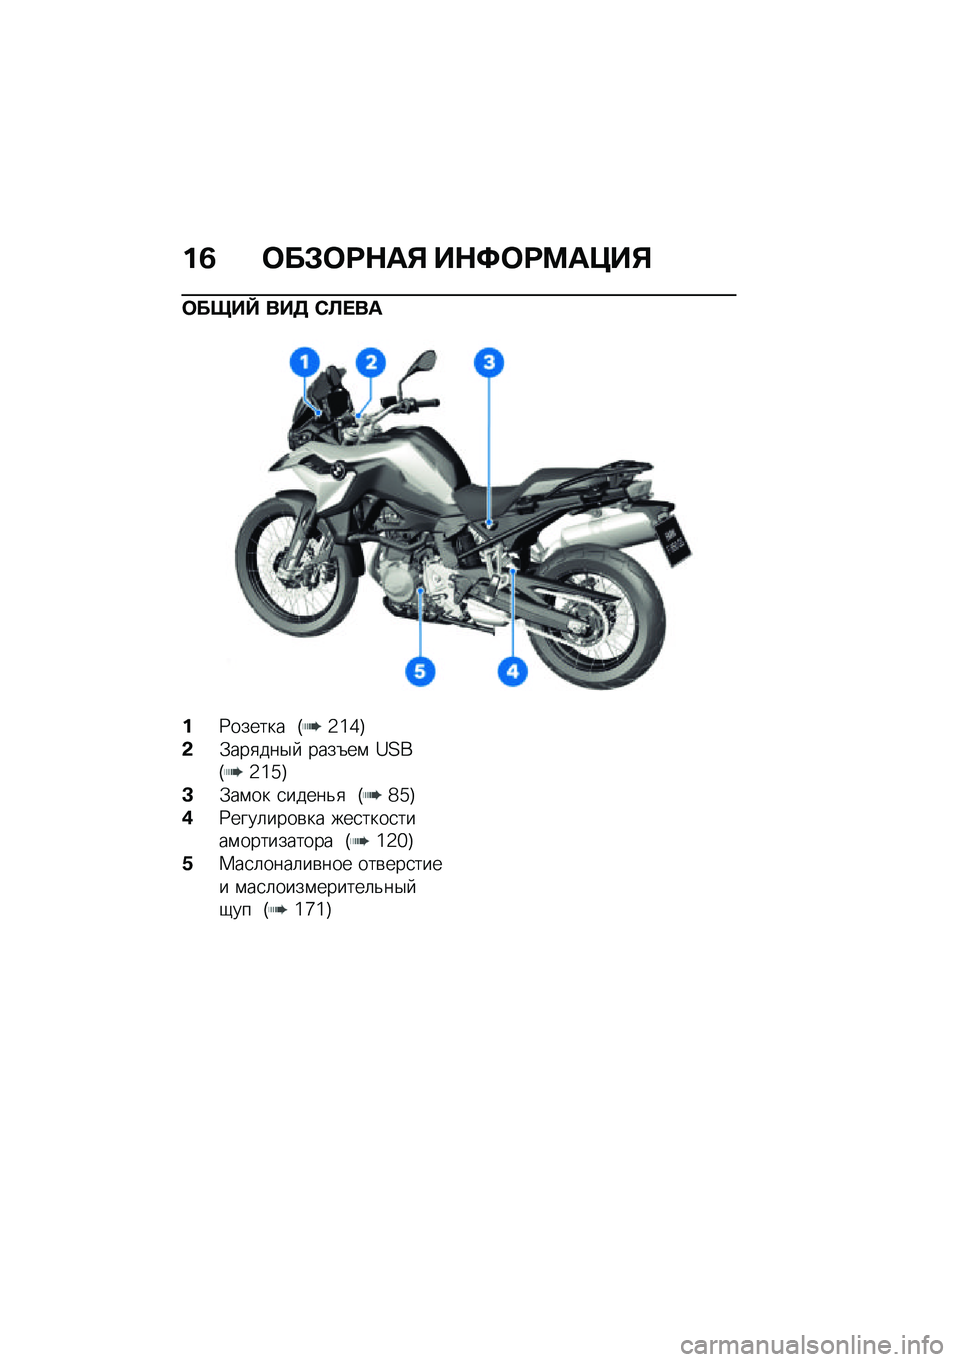 BMW MOTORRAD F 850 GS 2021  Руководство по эксплуатации (in Russian) ��2 �	��#�	�:�$��% ��$�;�	�:�<��=��%
�	����^ ���3 �)�A� ��
��9������ �I�2�]�^�J
�&�.���
���$�  ����6��\f �Y�?��I�2�]�_�J
�C�.��\f�� �
�����&�
 �I�`�_�J
�(�Z����	